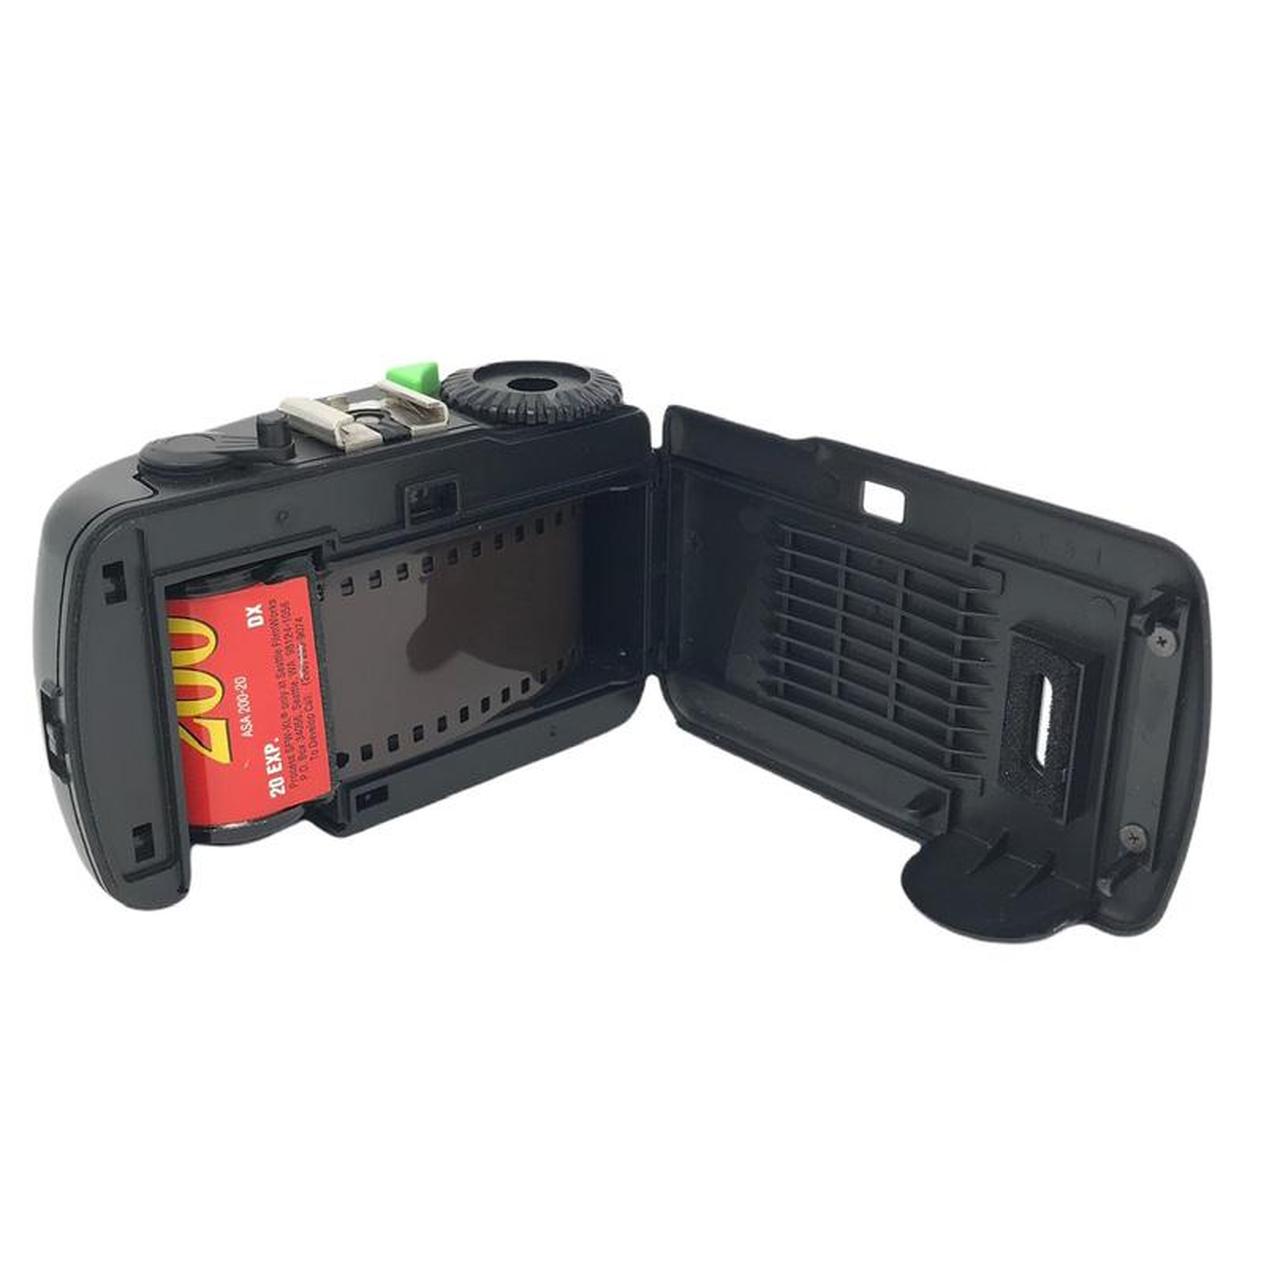 Vivitar Cameras-and-accessories (4)